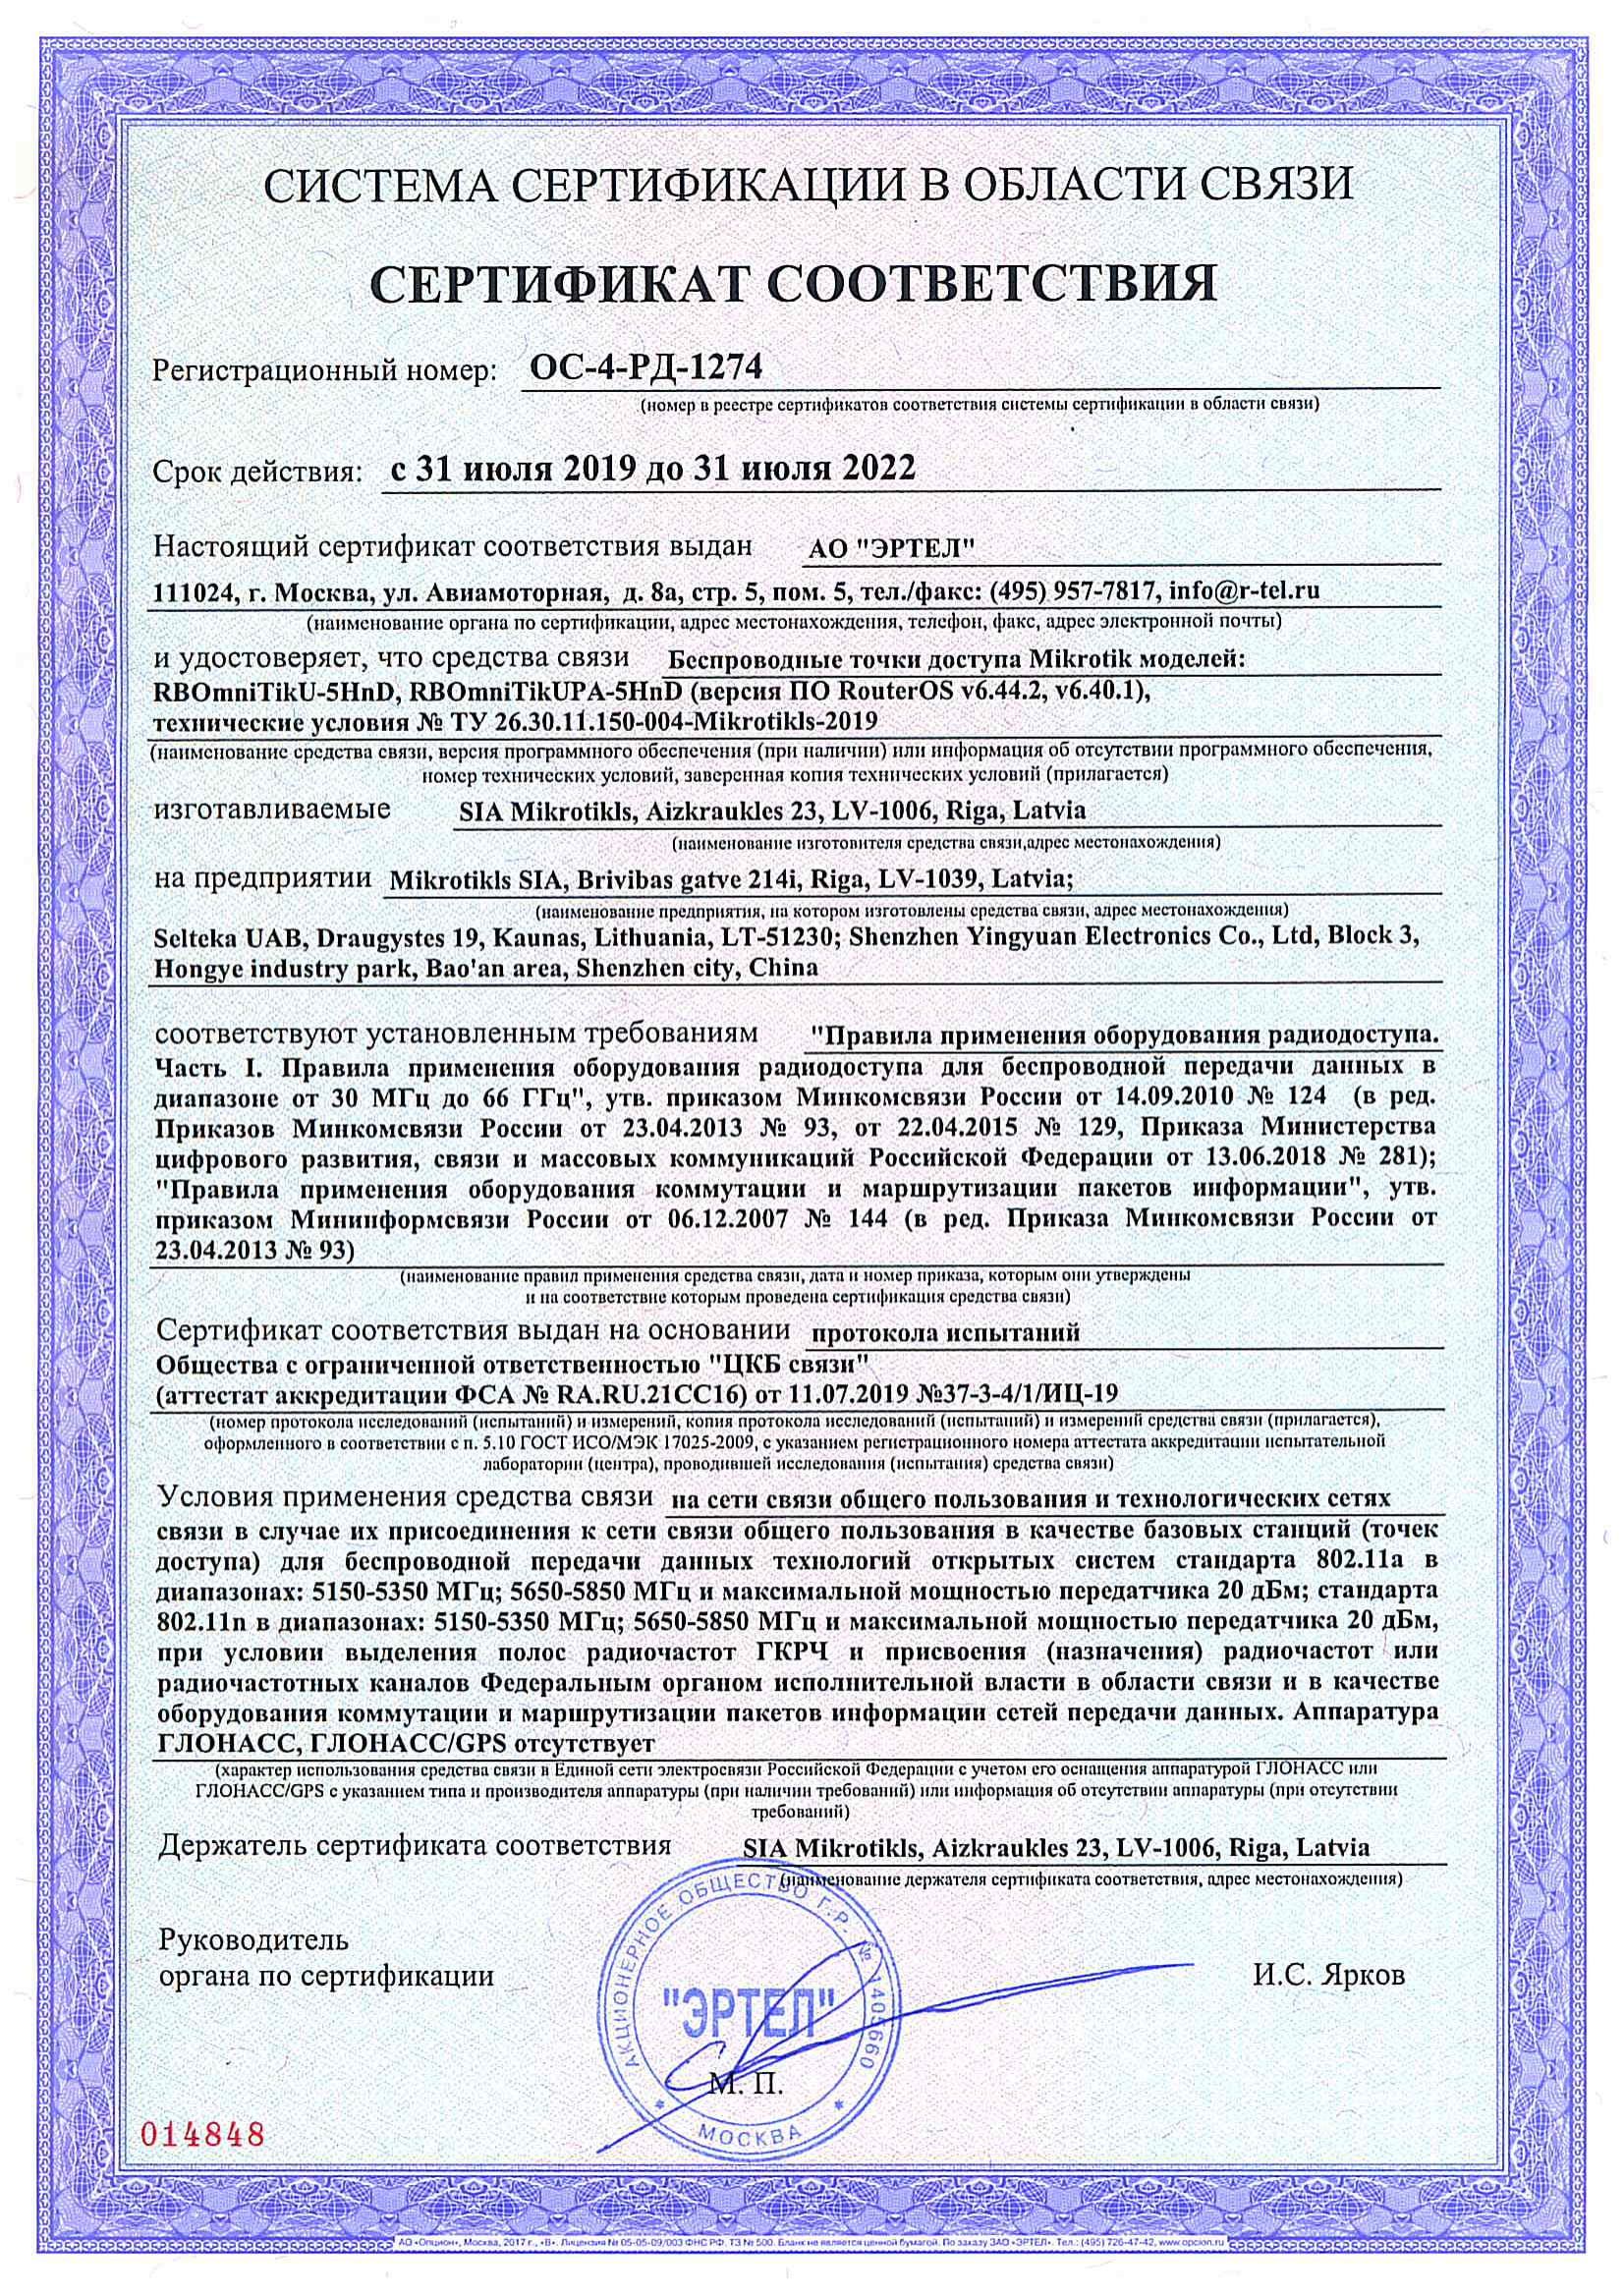 Сертификат соответствия в области связи ОС-4-РД-1274